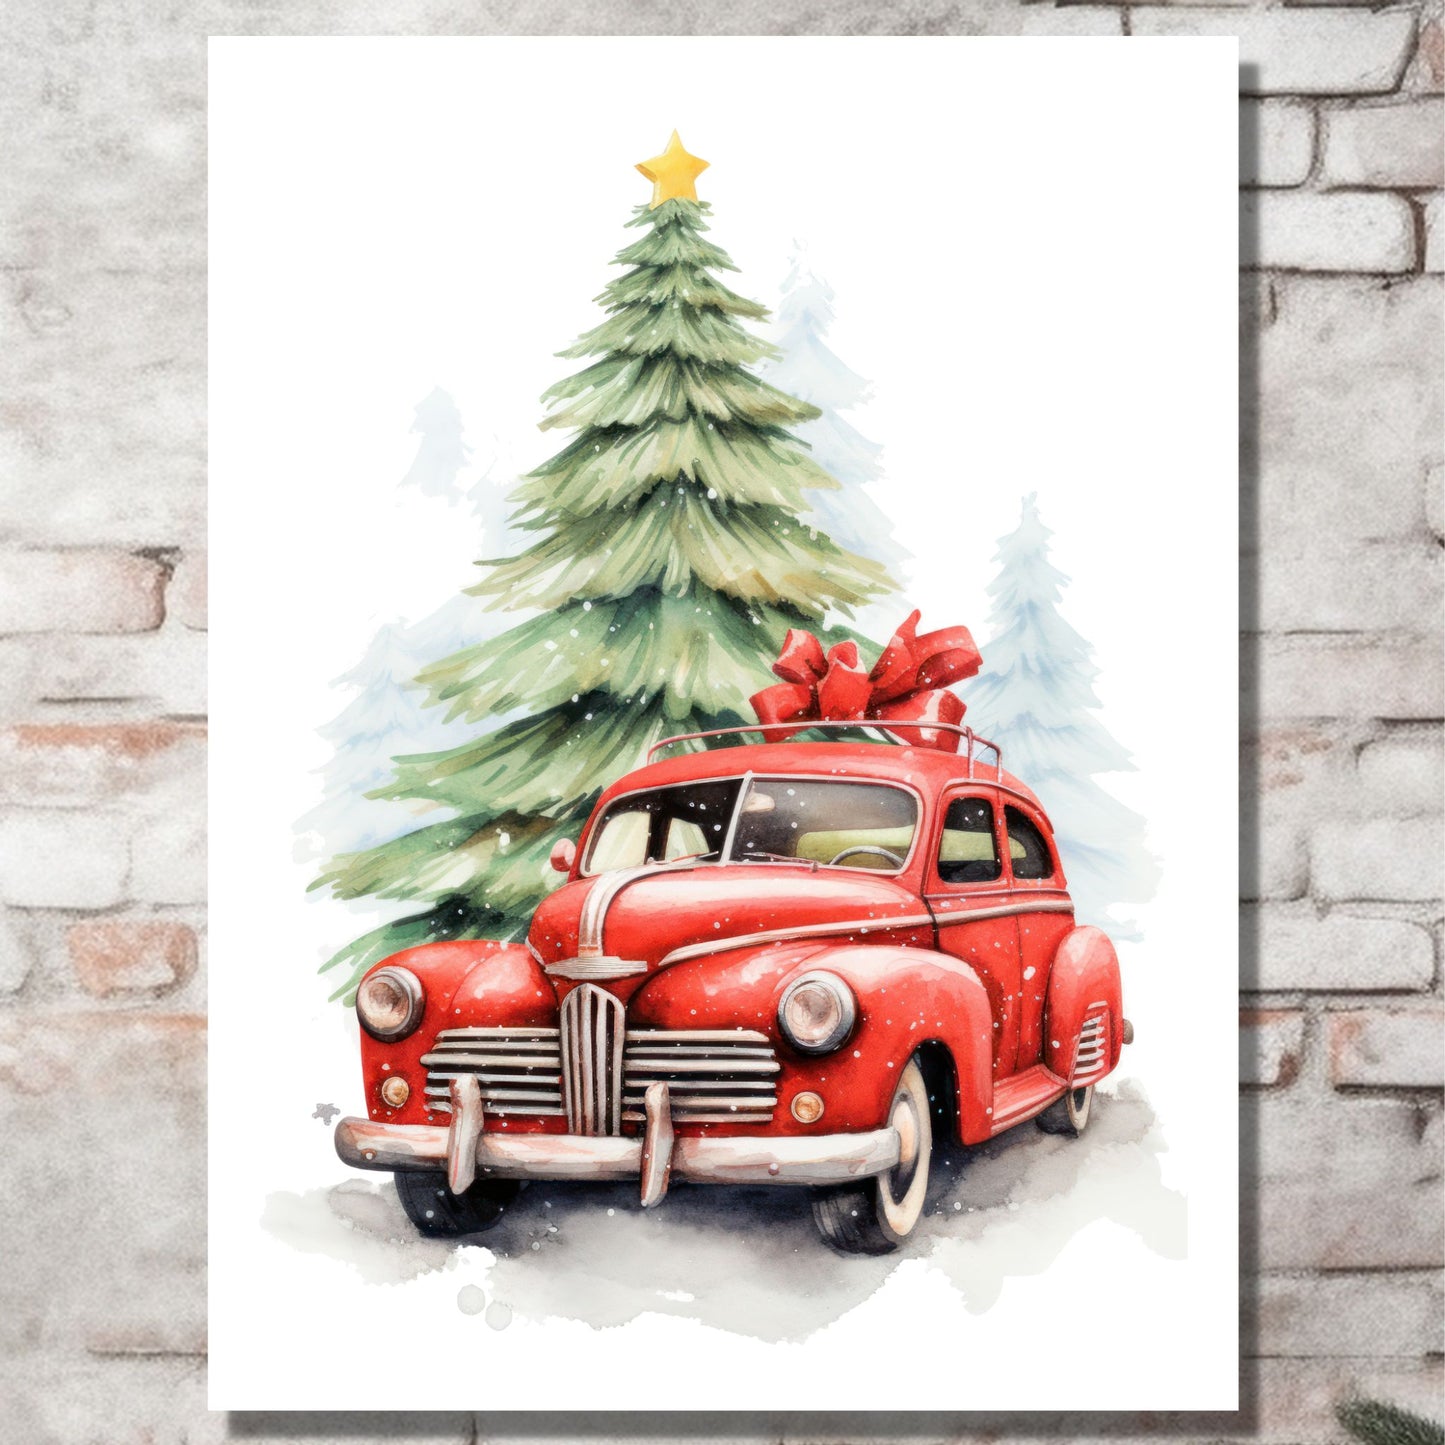 Plakat og lerret med grafisk julemotiv av gammel, rød veteranbil. Bilen kjører i en skog.  På bildet henger motivet på lerret på en murvegg.